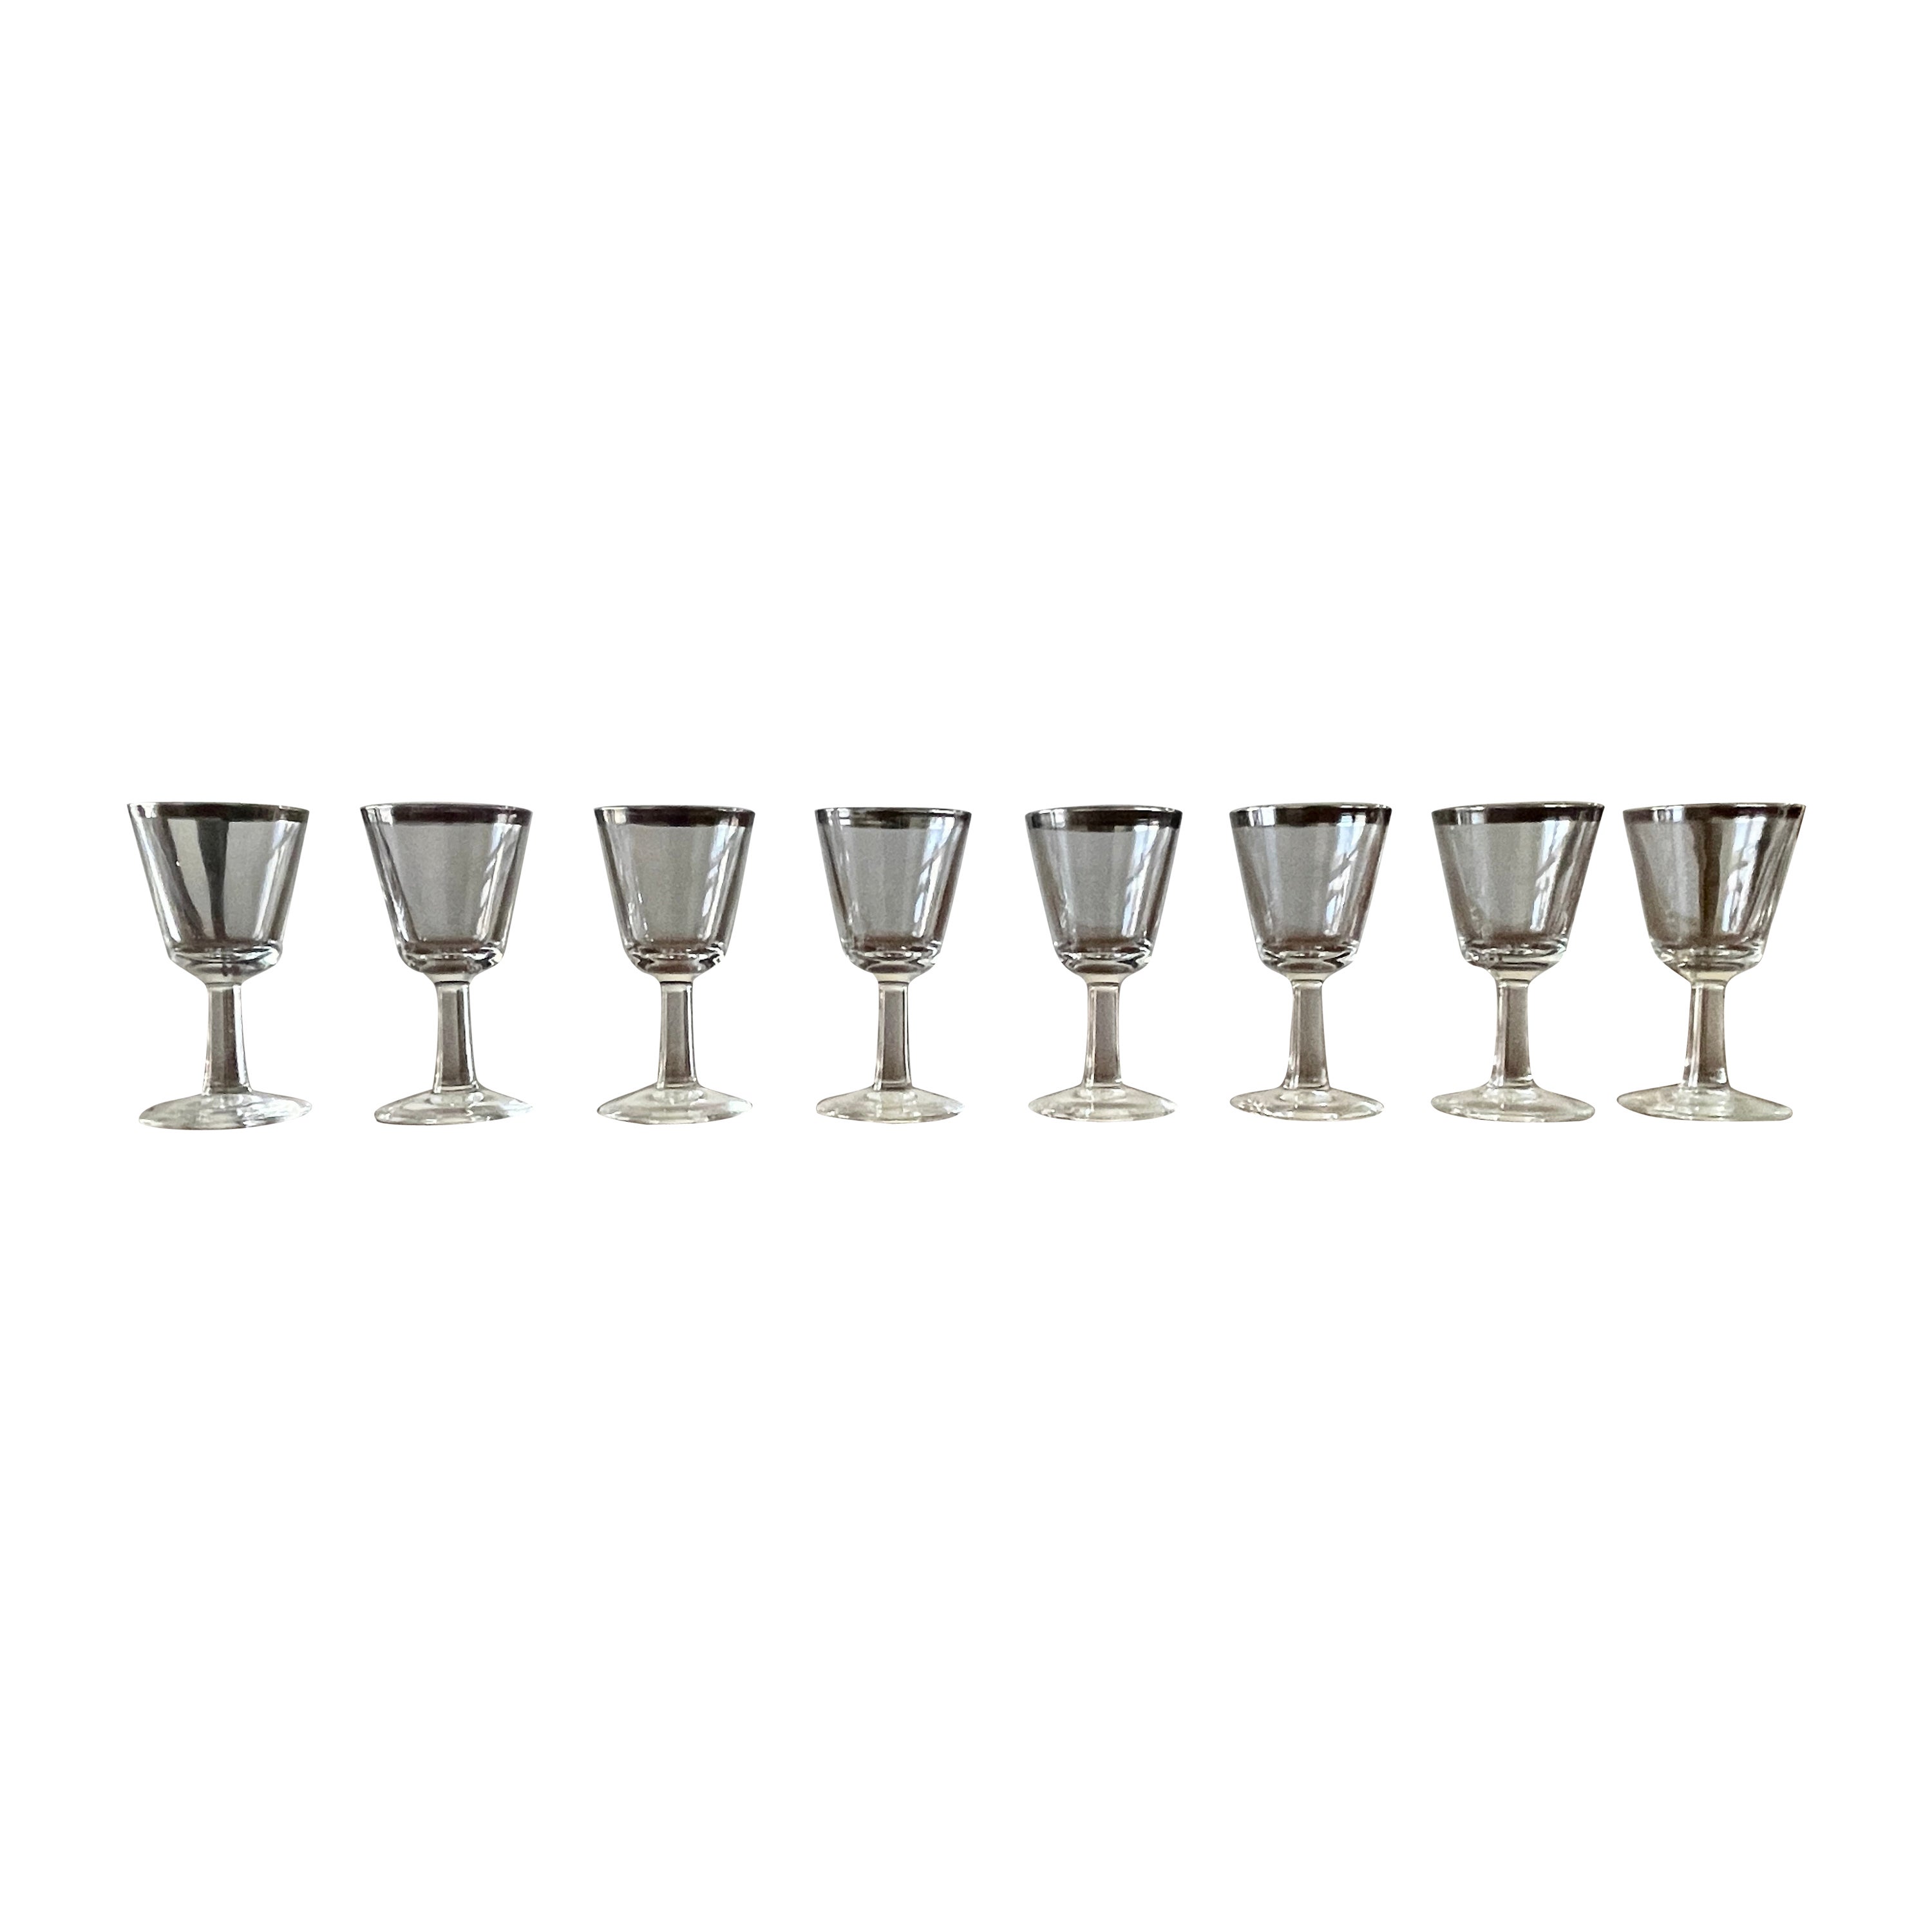 Platinum Rimmed Cordial Glasses- Set of 8 For Sale